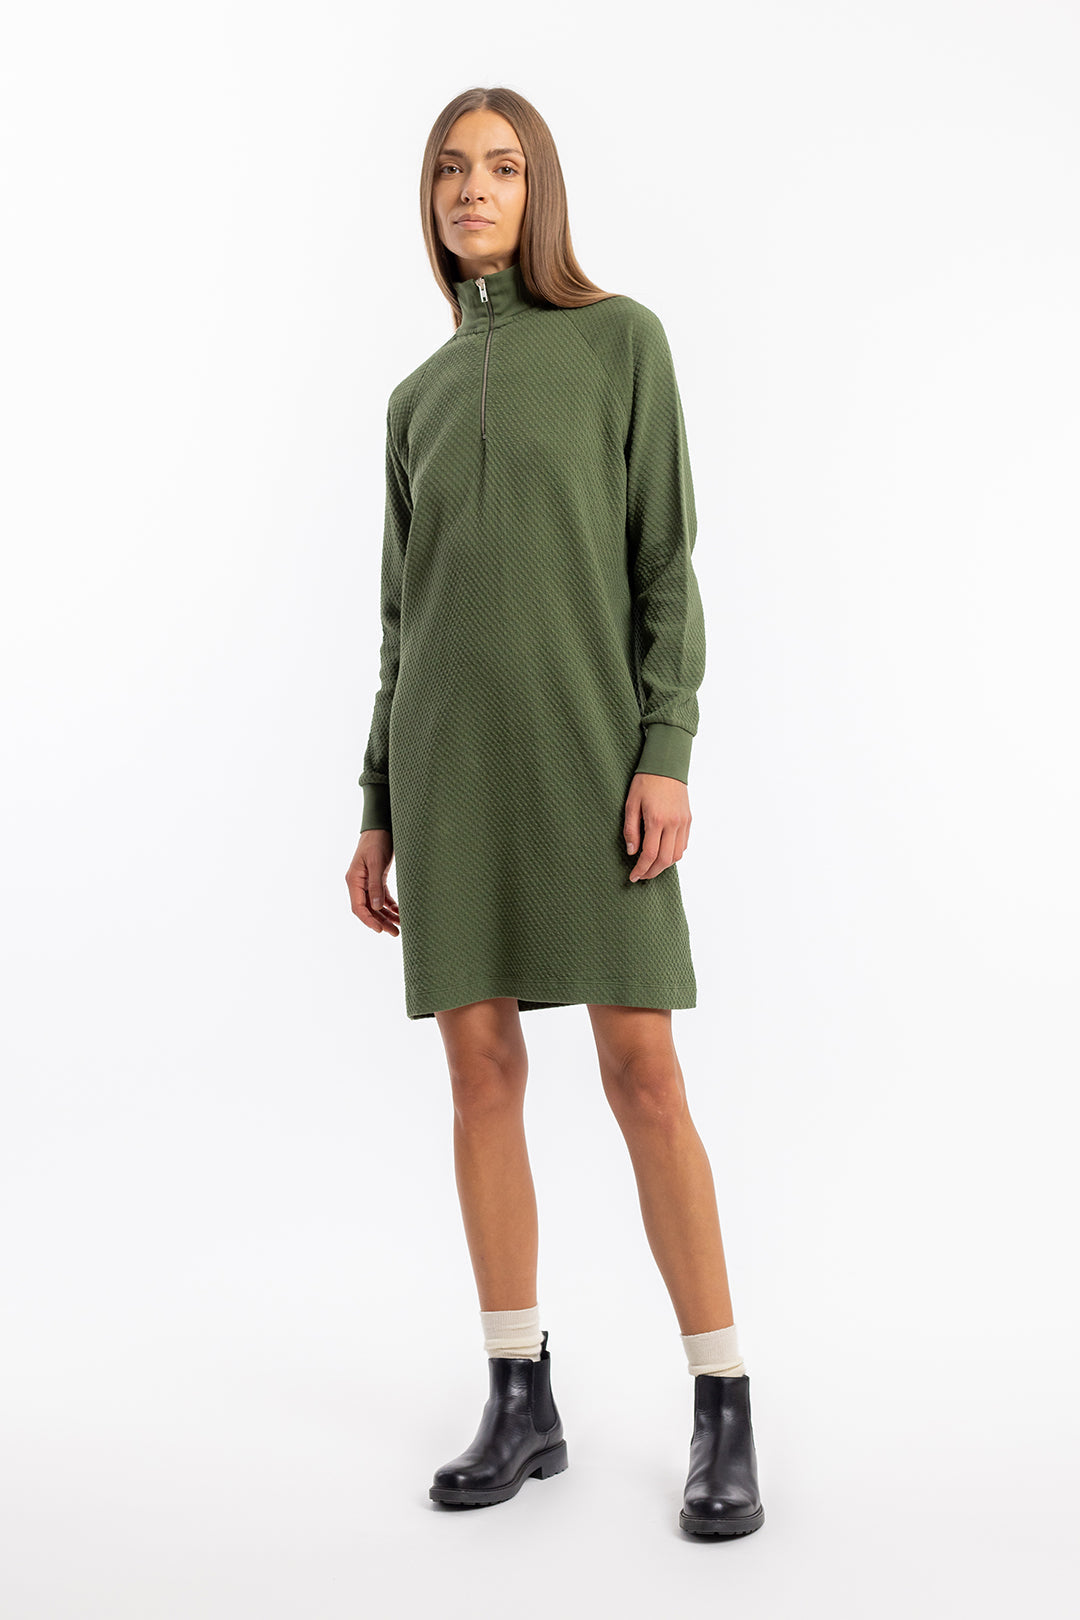 Grünes Sweatshirt-Kleid aus 100% Bio-Baumwolle von Rotholz